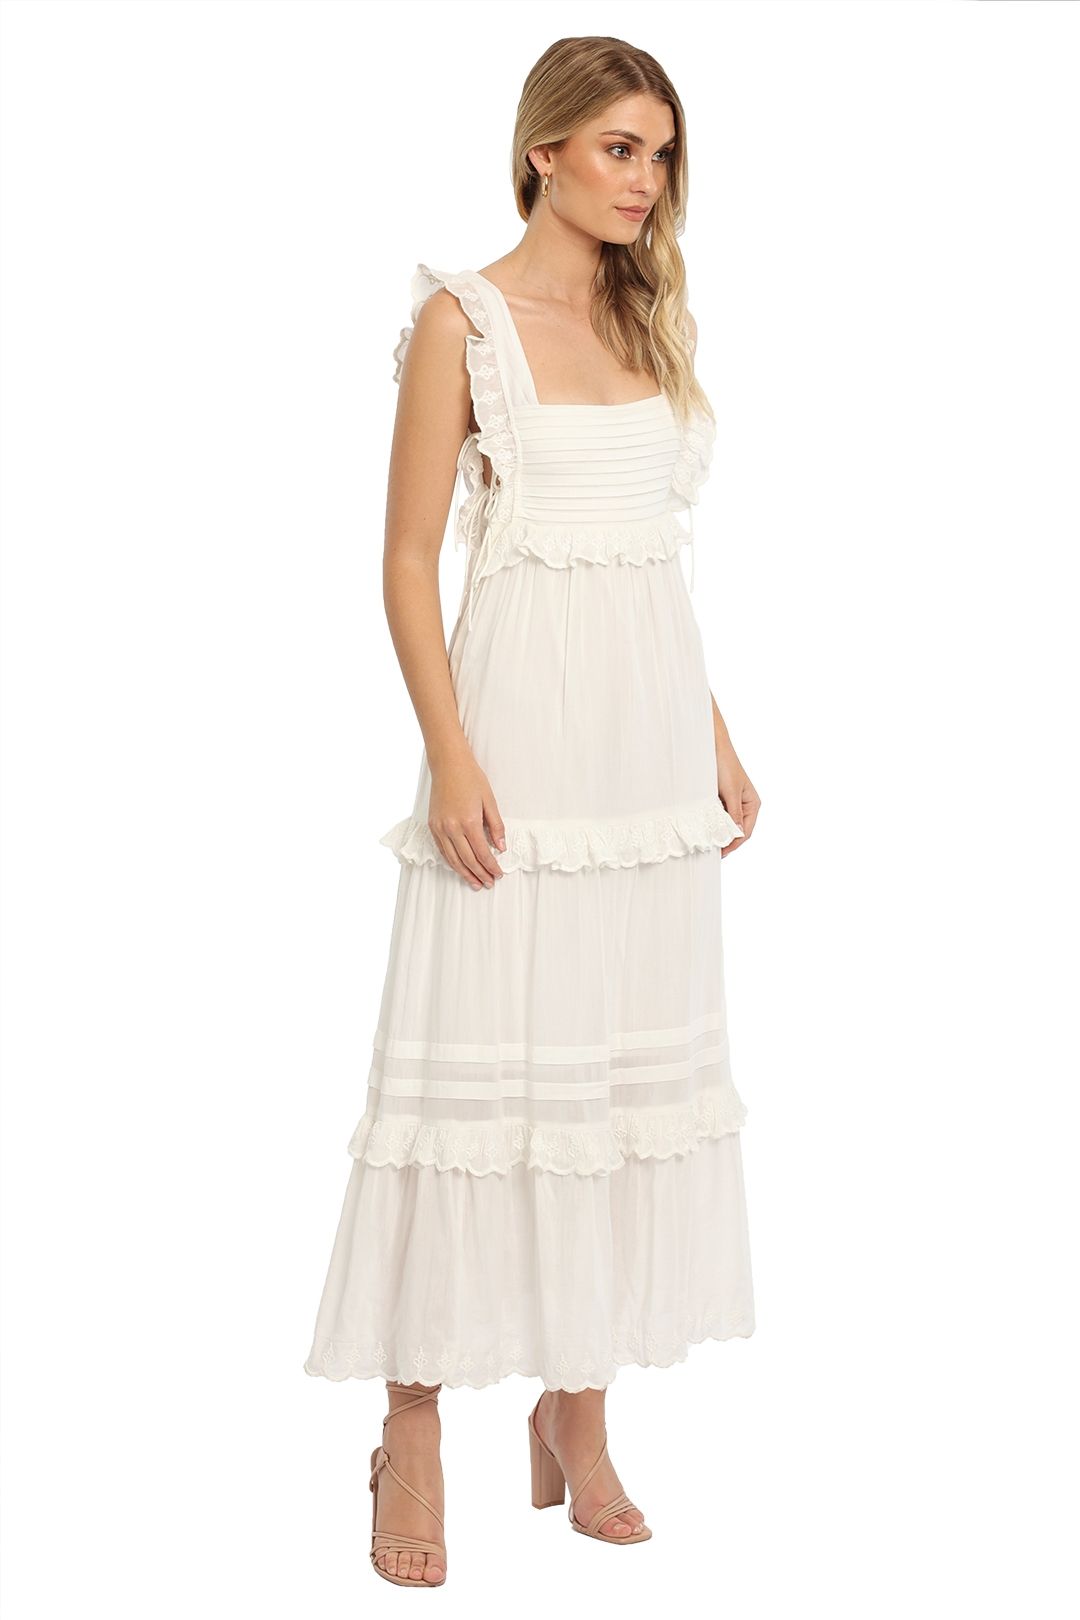 Saint Armont Soleil Midi Dress White